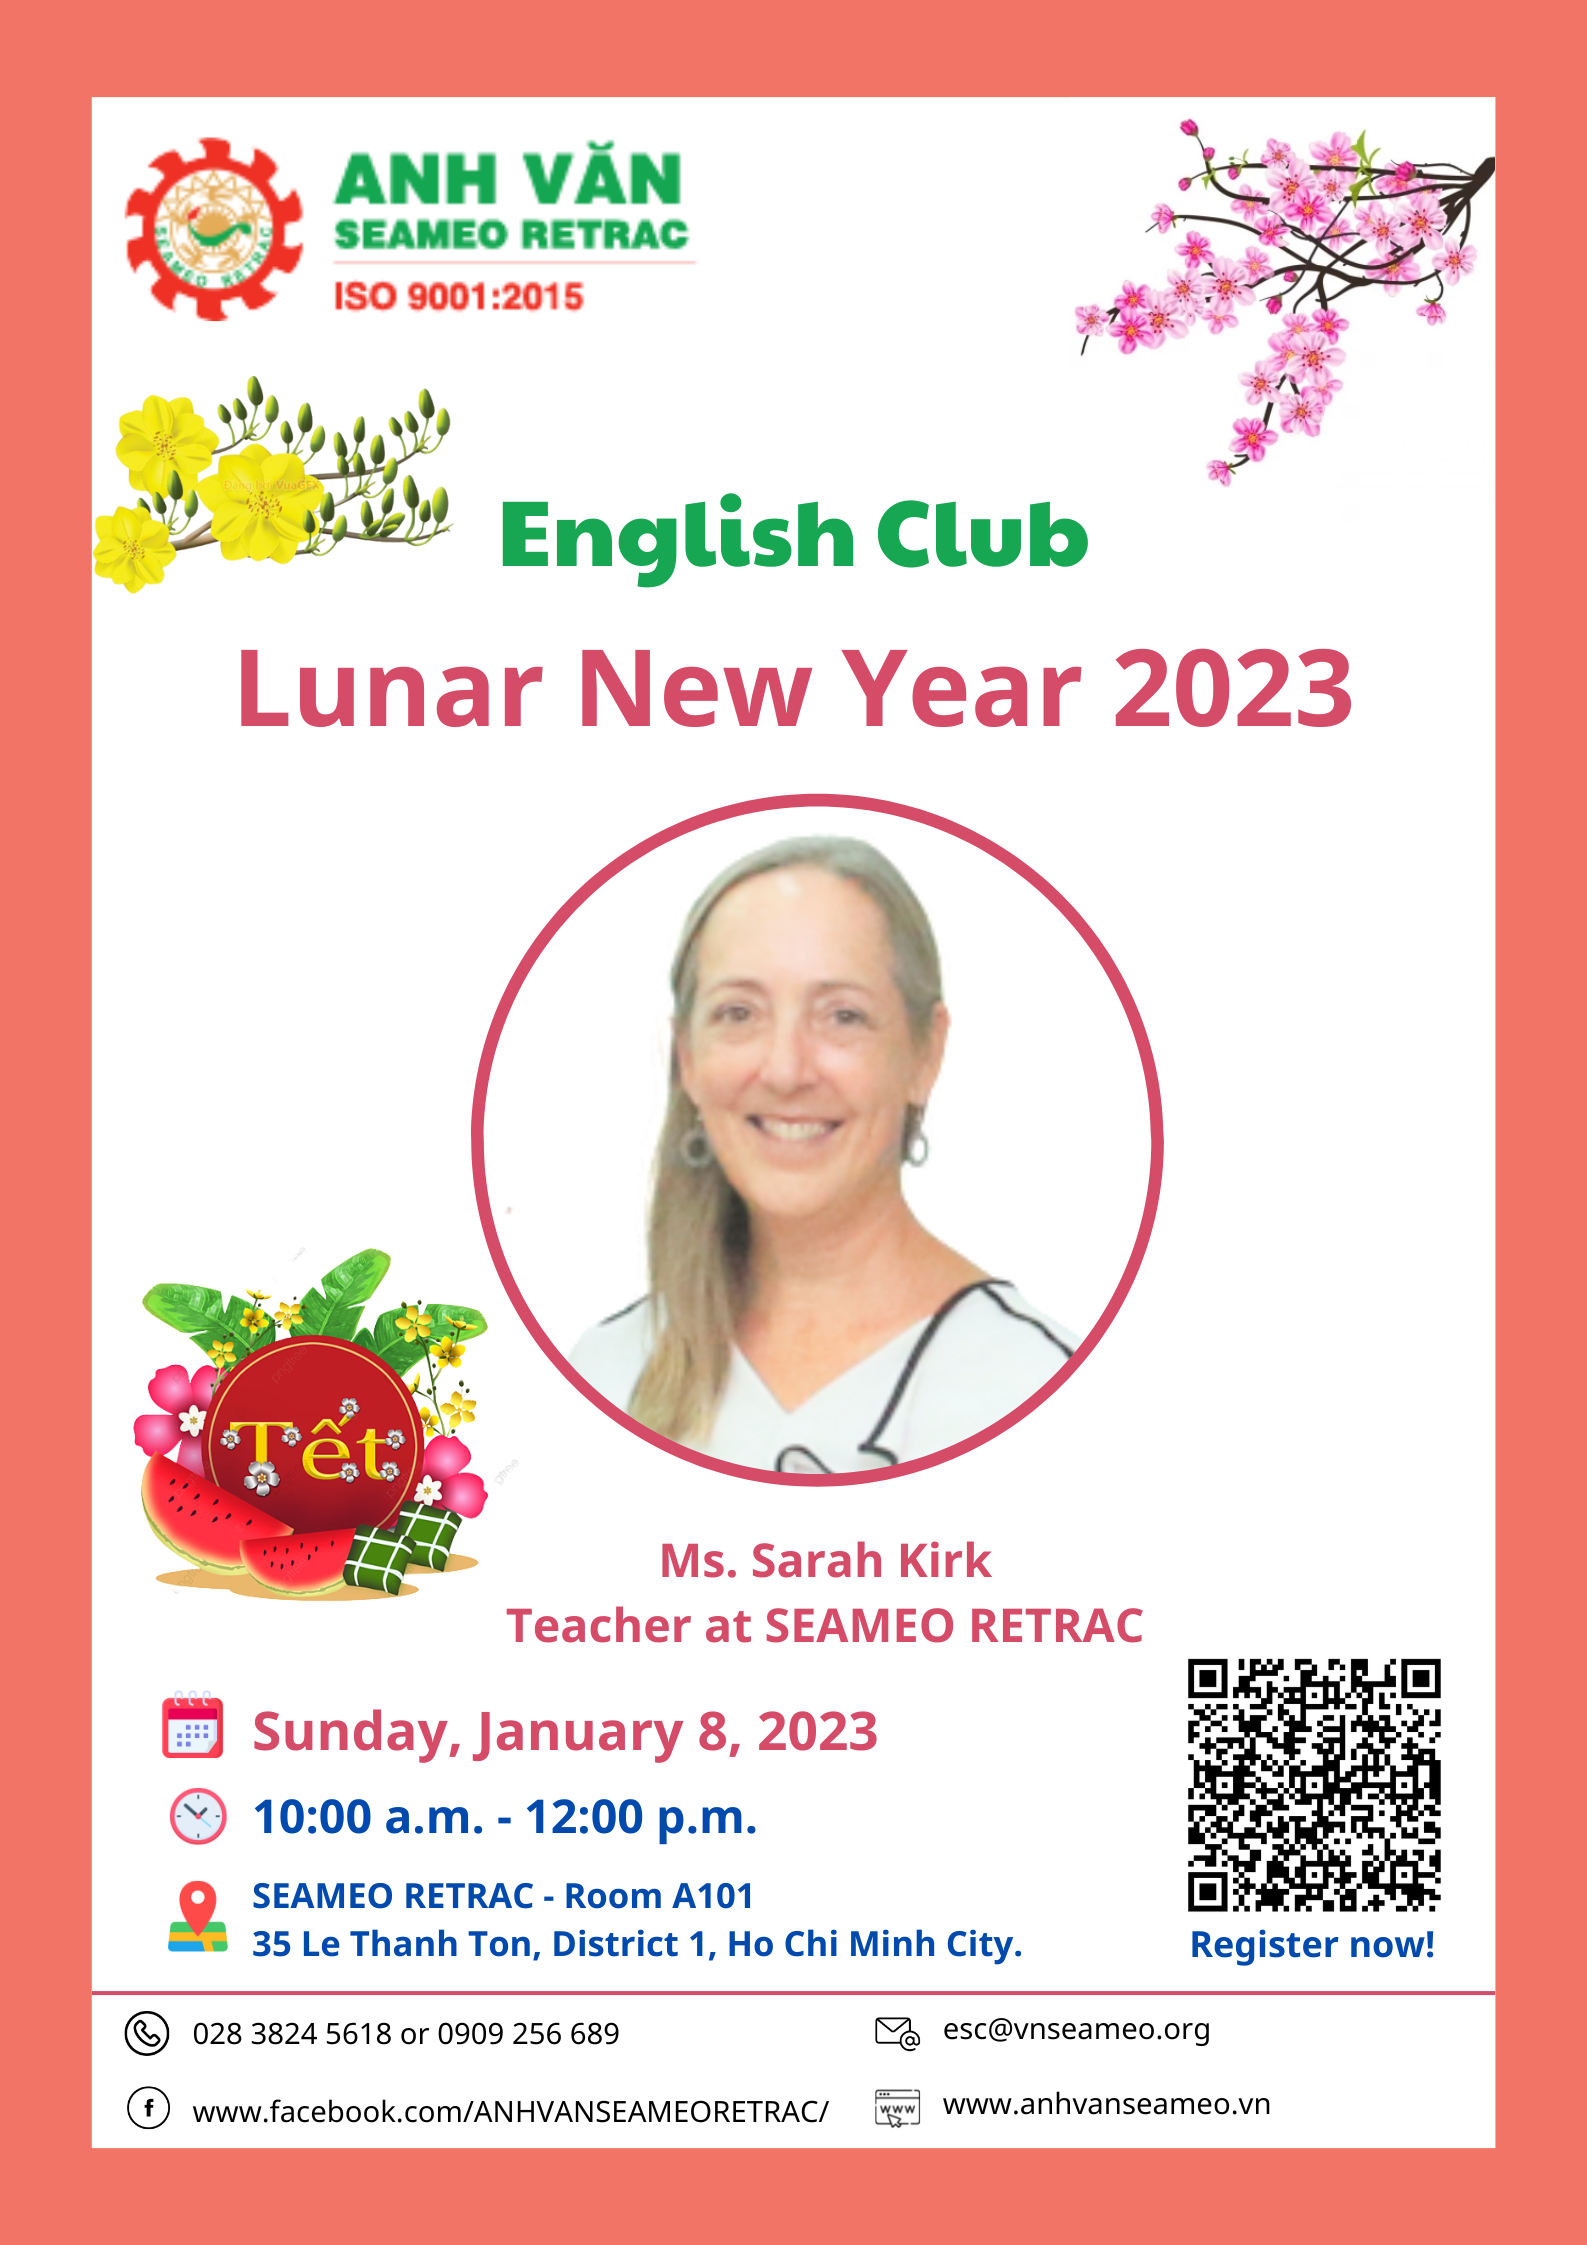 English club titled “Lunar New Year 2023”